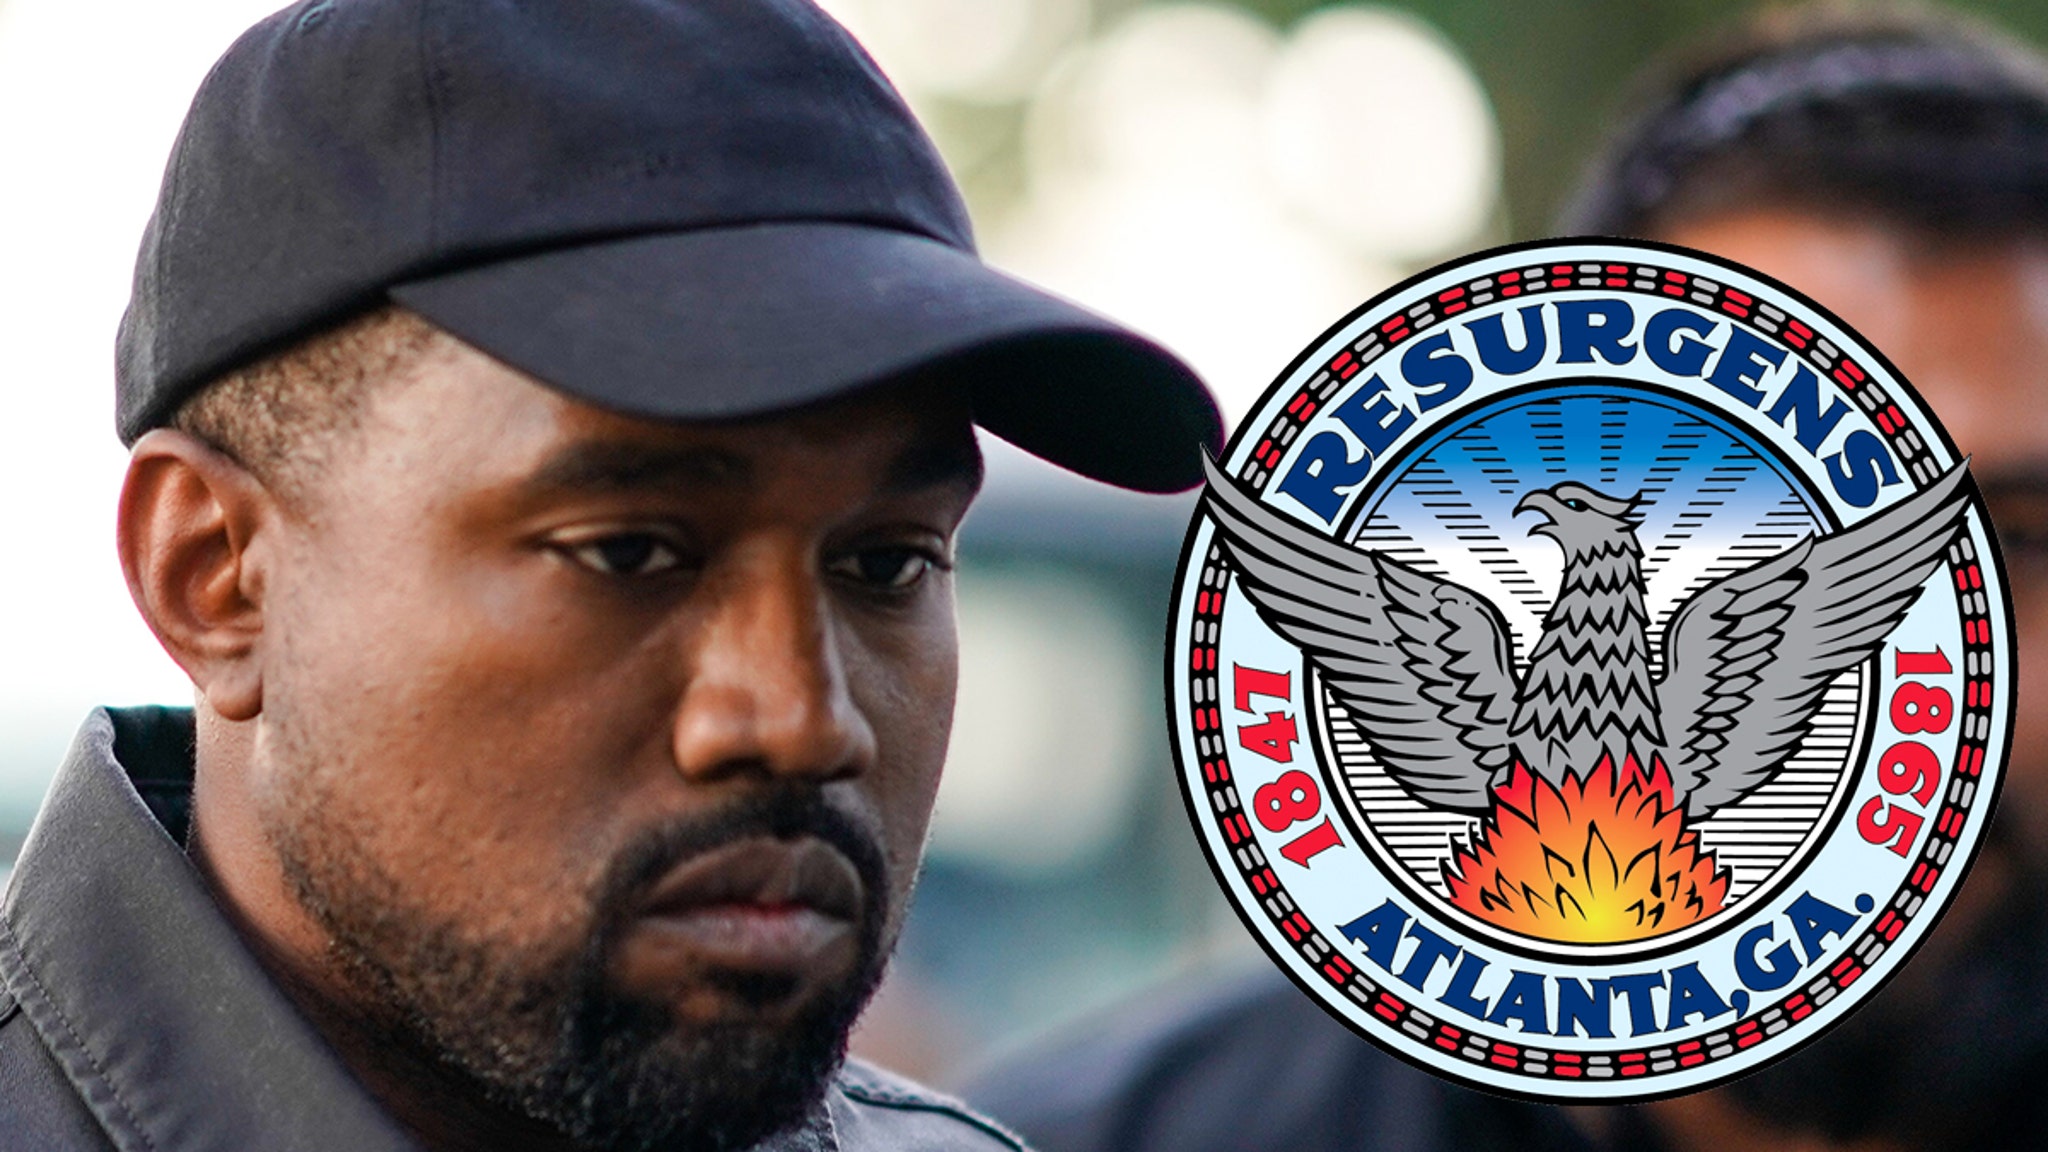 Radny z Atlanty, który ogłosił „Dzień Kanye Westa”, nigdy więcej tego nie zrobi